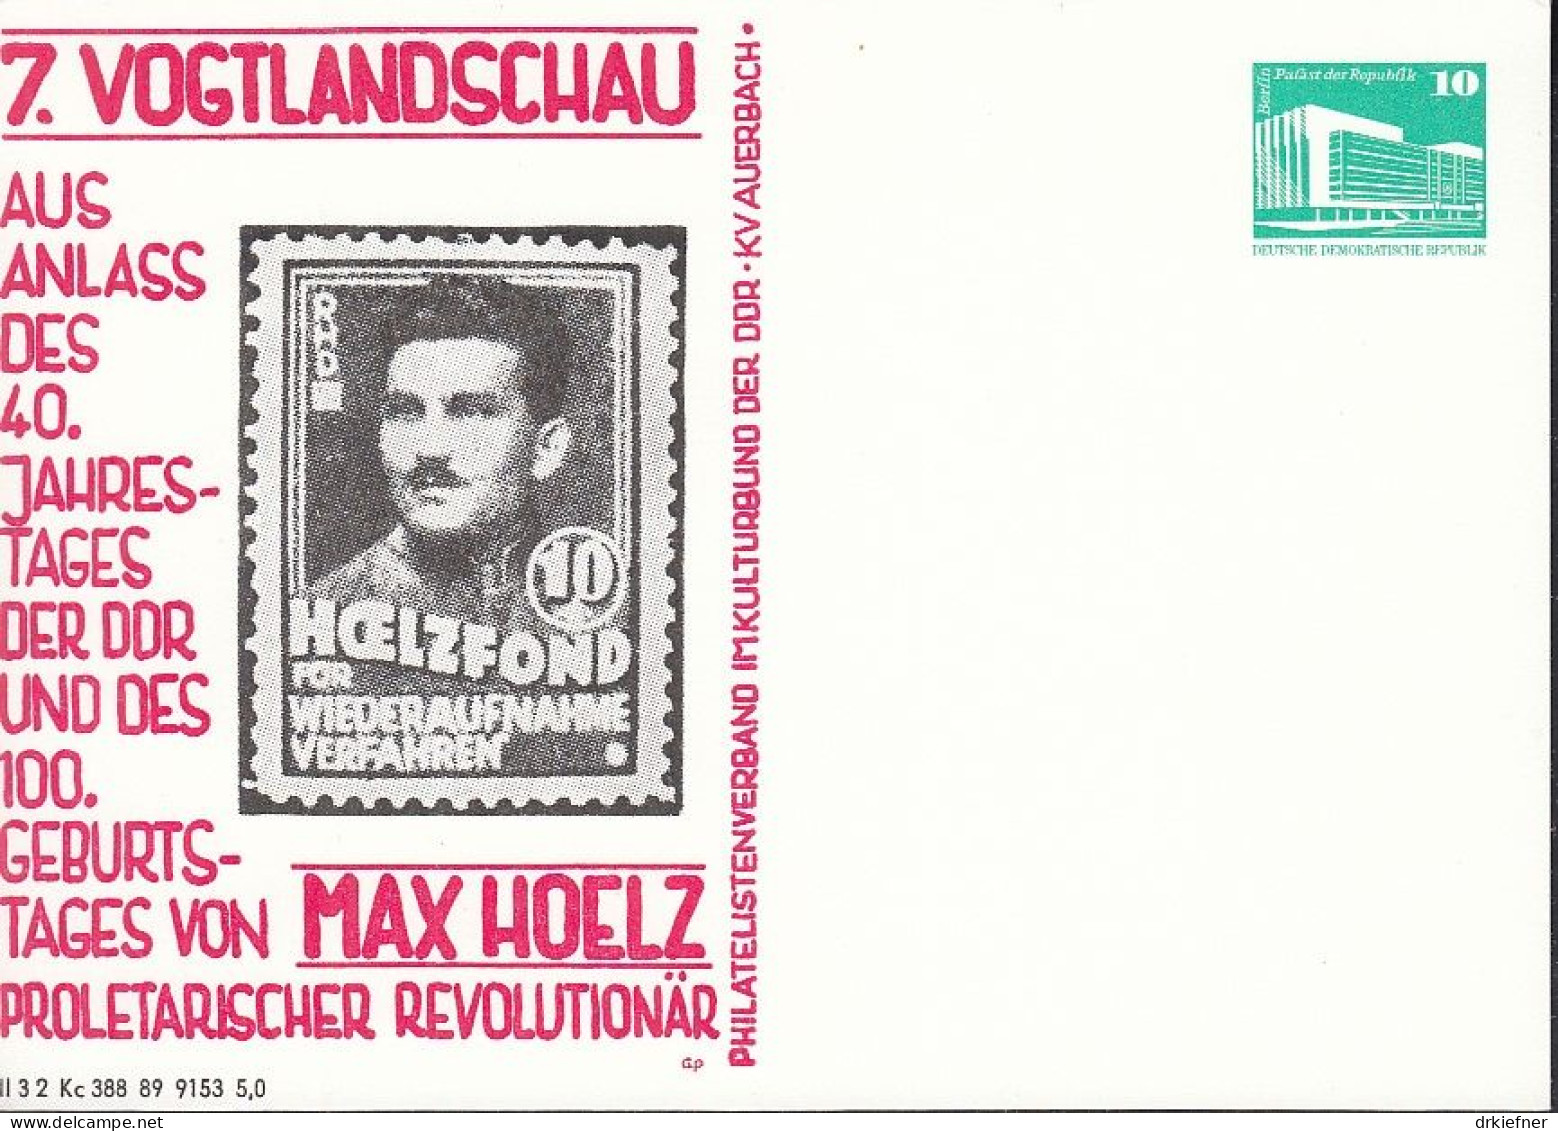 DDR PP 18, Ungebraucht, Max Hoelz, 7. Vogtlandschau, Auerbach 1989 - Privatpostkarten - Ungebraucht